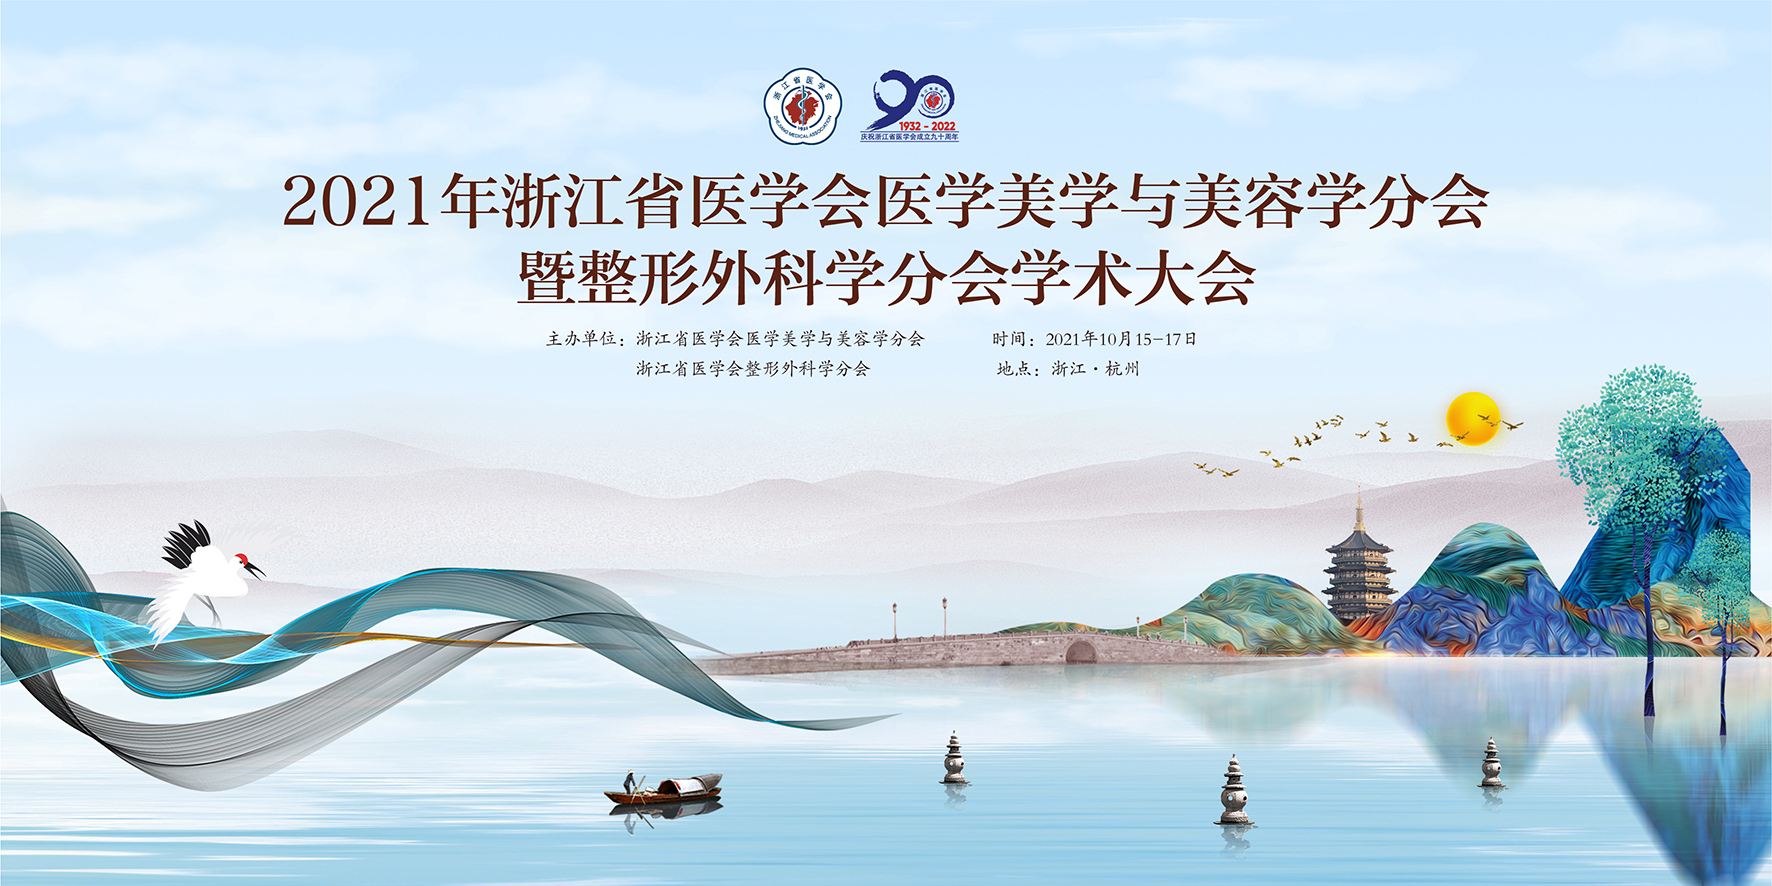 2021 年浙江省医学会医学美学与美容学和整形外科学学术大会